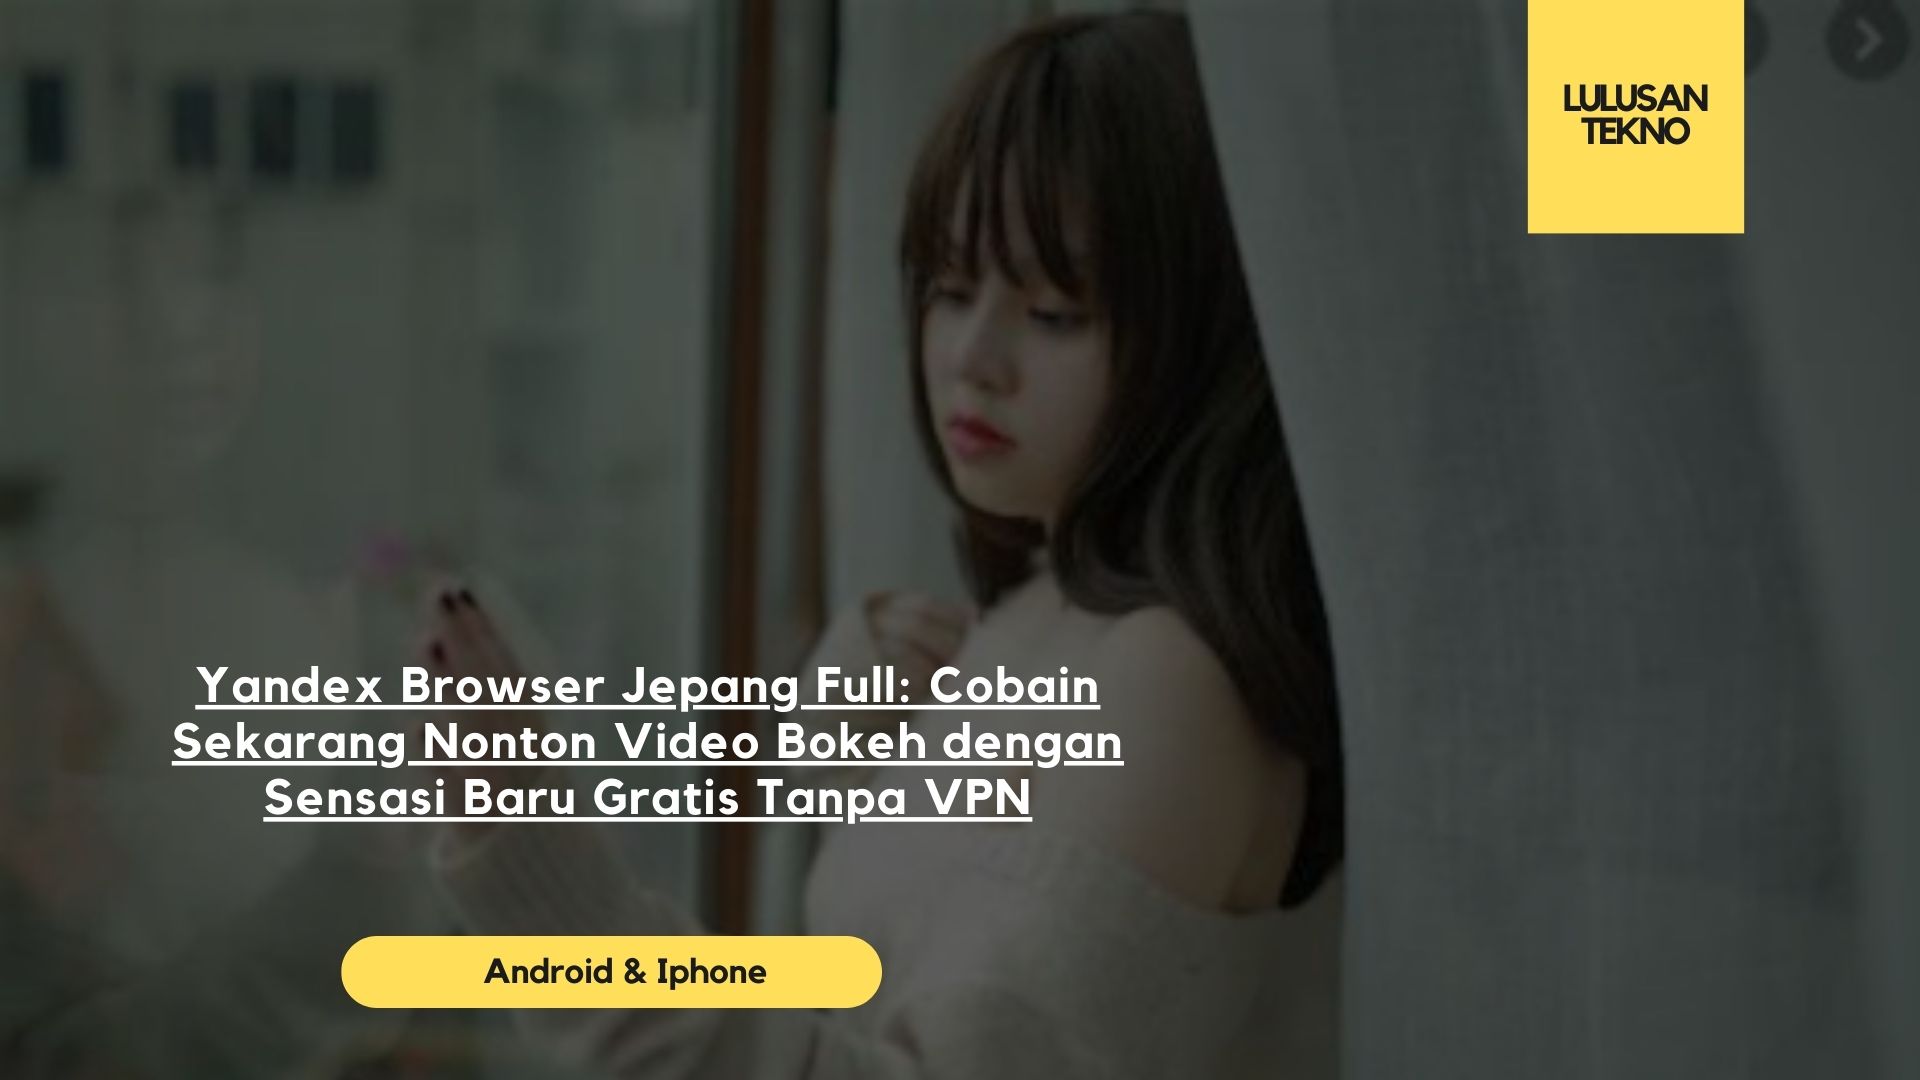 Yandex Browser Jepang Full: Cobain Sekarang Nonton Video Bokeh dengan Sensasi Baru Gratis Tanpa VPN